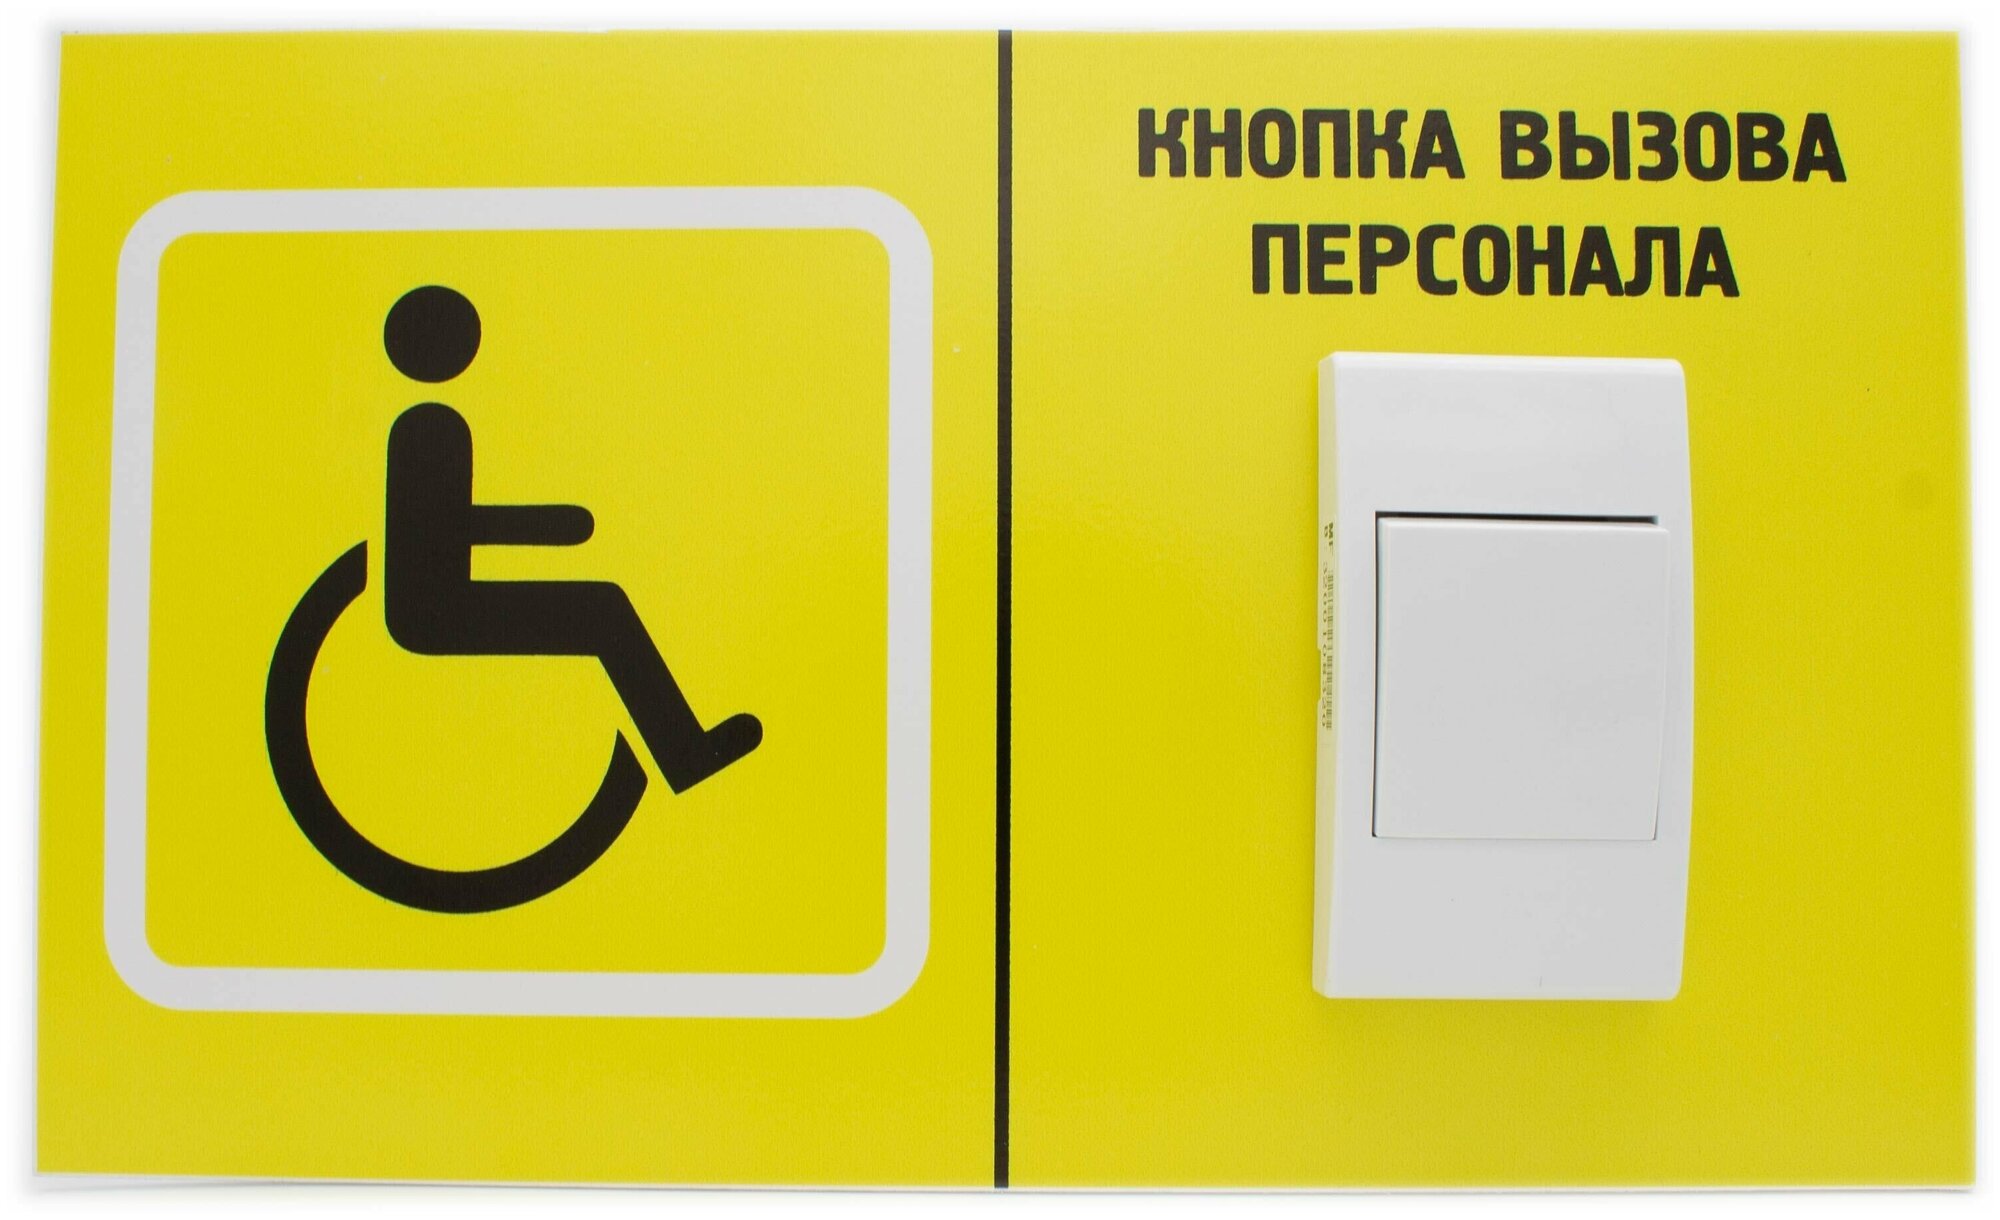 Звонок + кнопка Табличка "Кнопка вызова персонала" для инвалидов по гос. программе "Доступная среда"